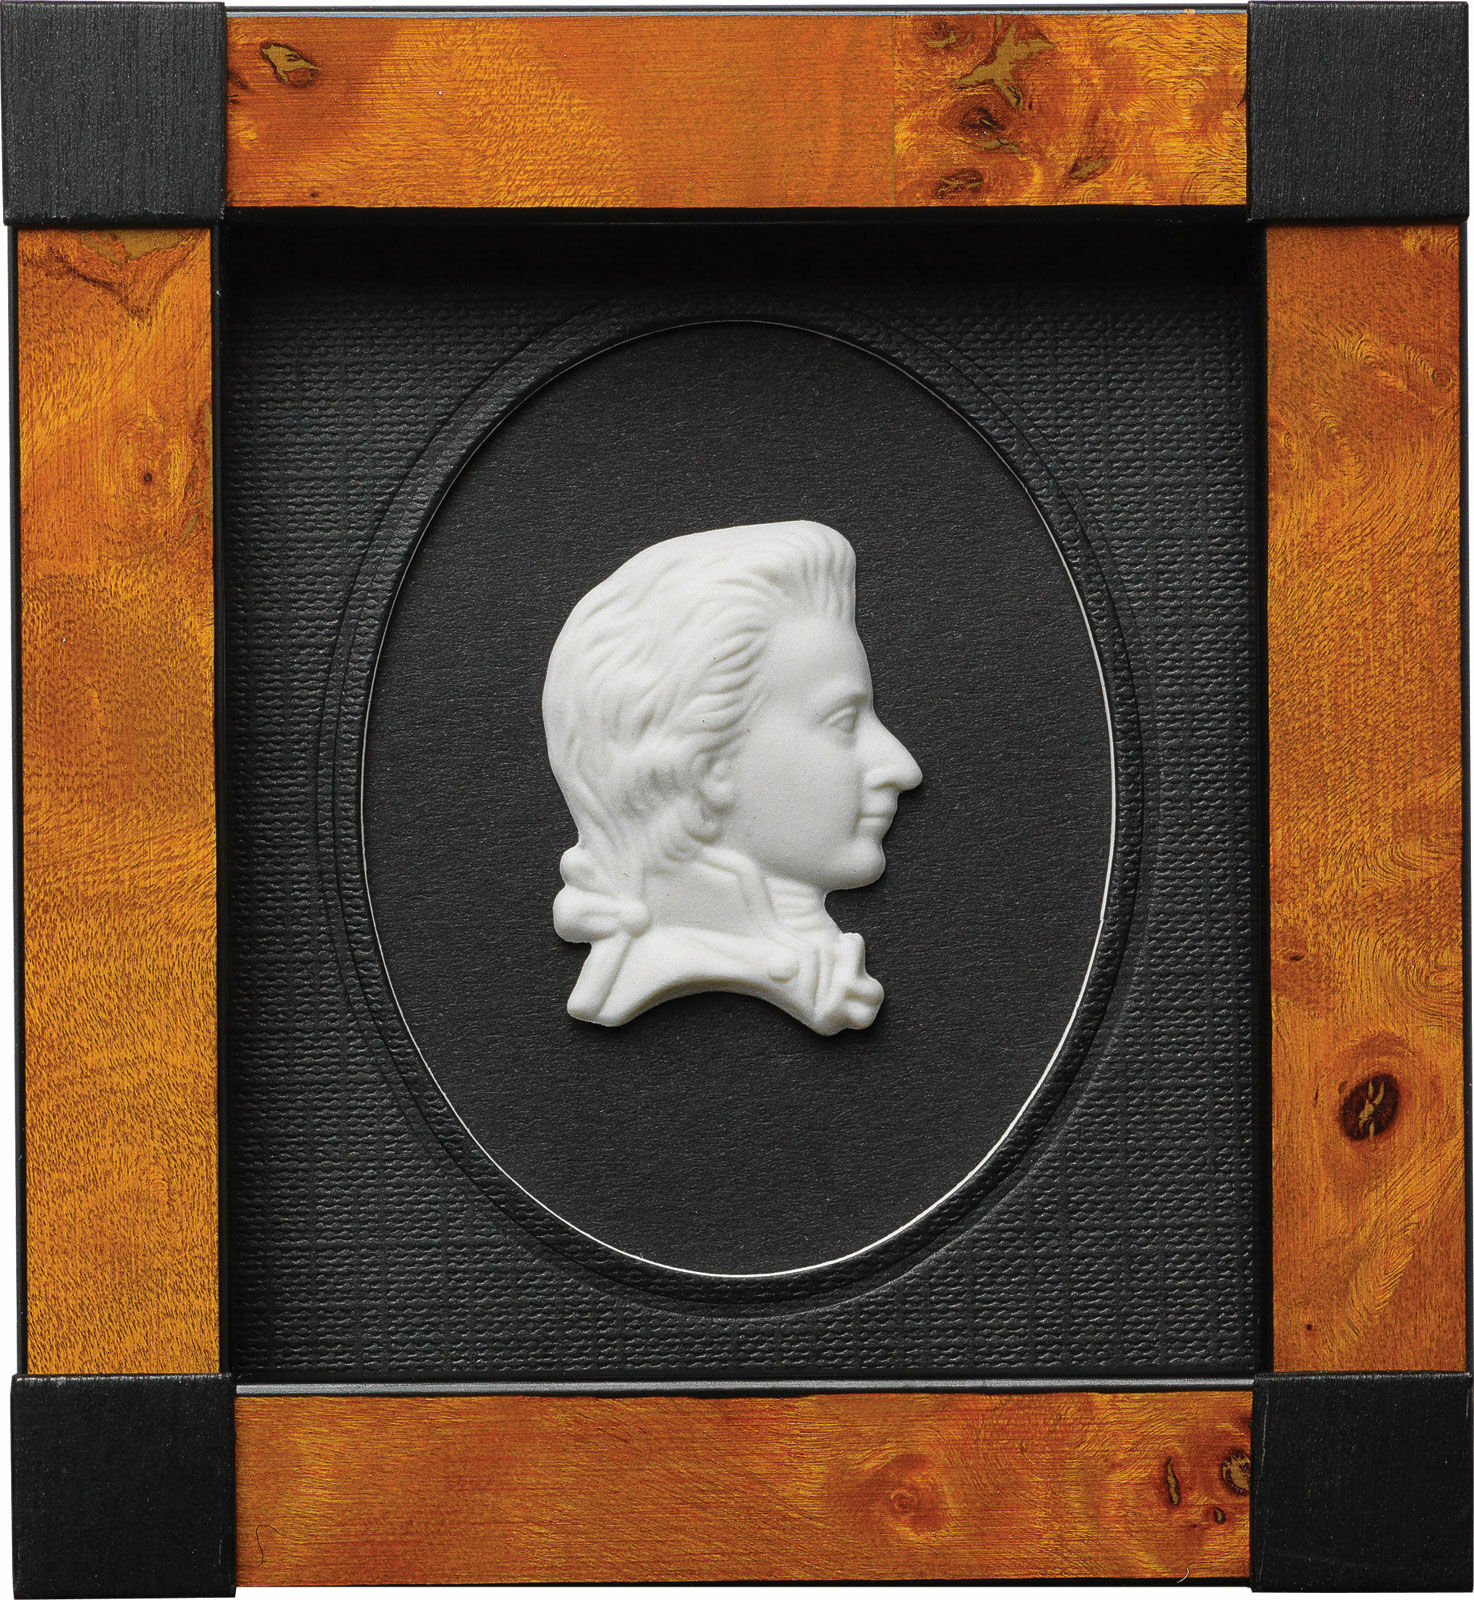 Miniatuur porseleinen beeld "Wolfgang Amadeus Mozart", ingelijst